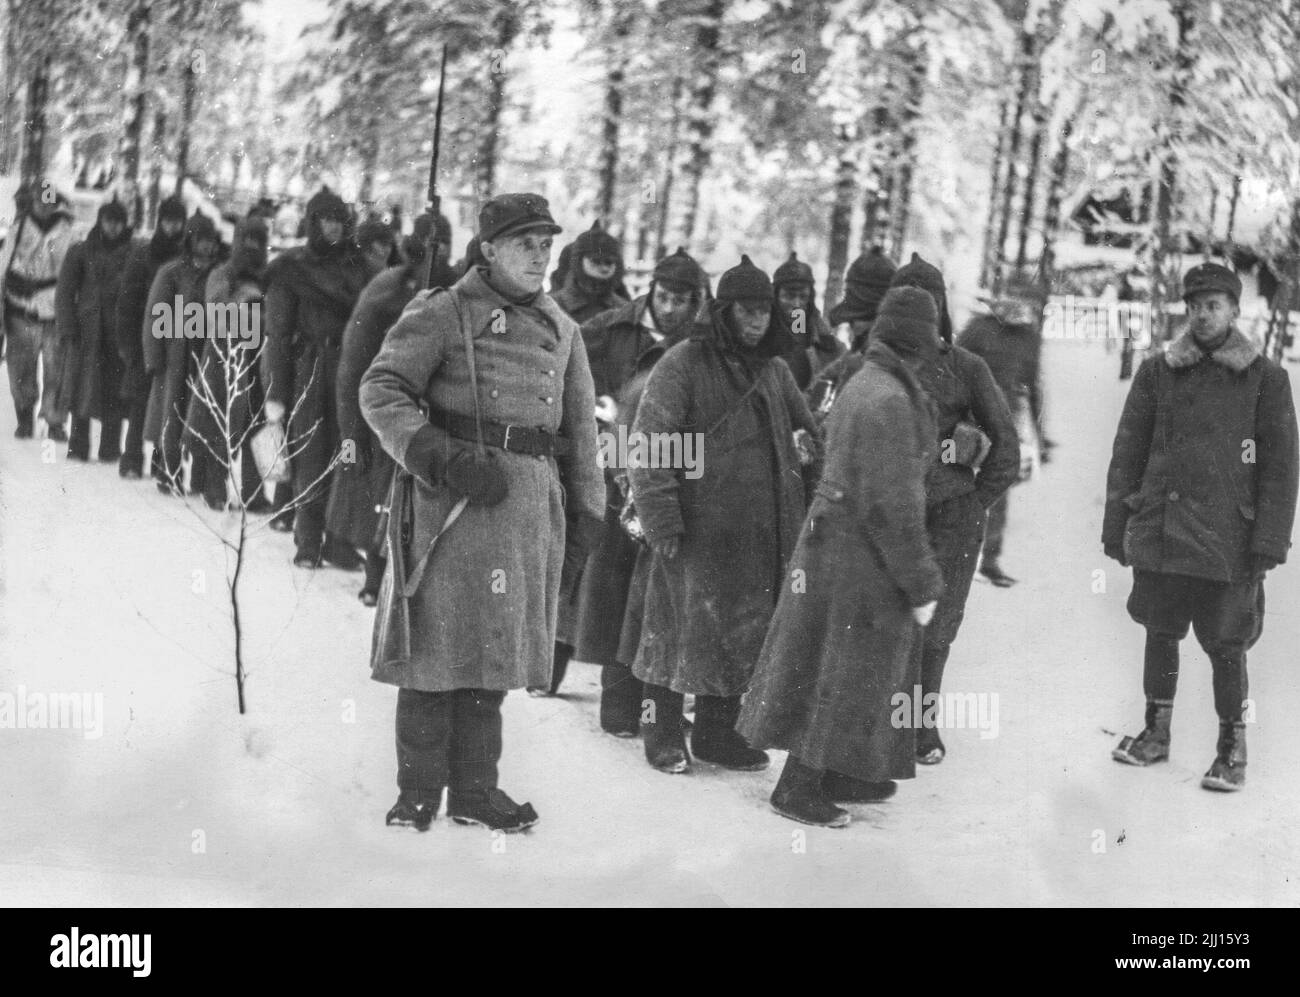 Sovjetiska krigsfångar på väg till fångläger den 21 januari 1949, sedan den sovjetiska 44e divisionen besegrats av finska styrkor i Suomussalmi i norr Stock Photo